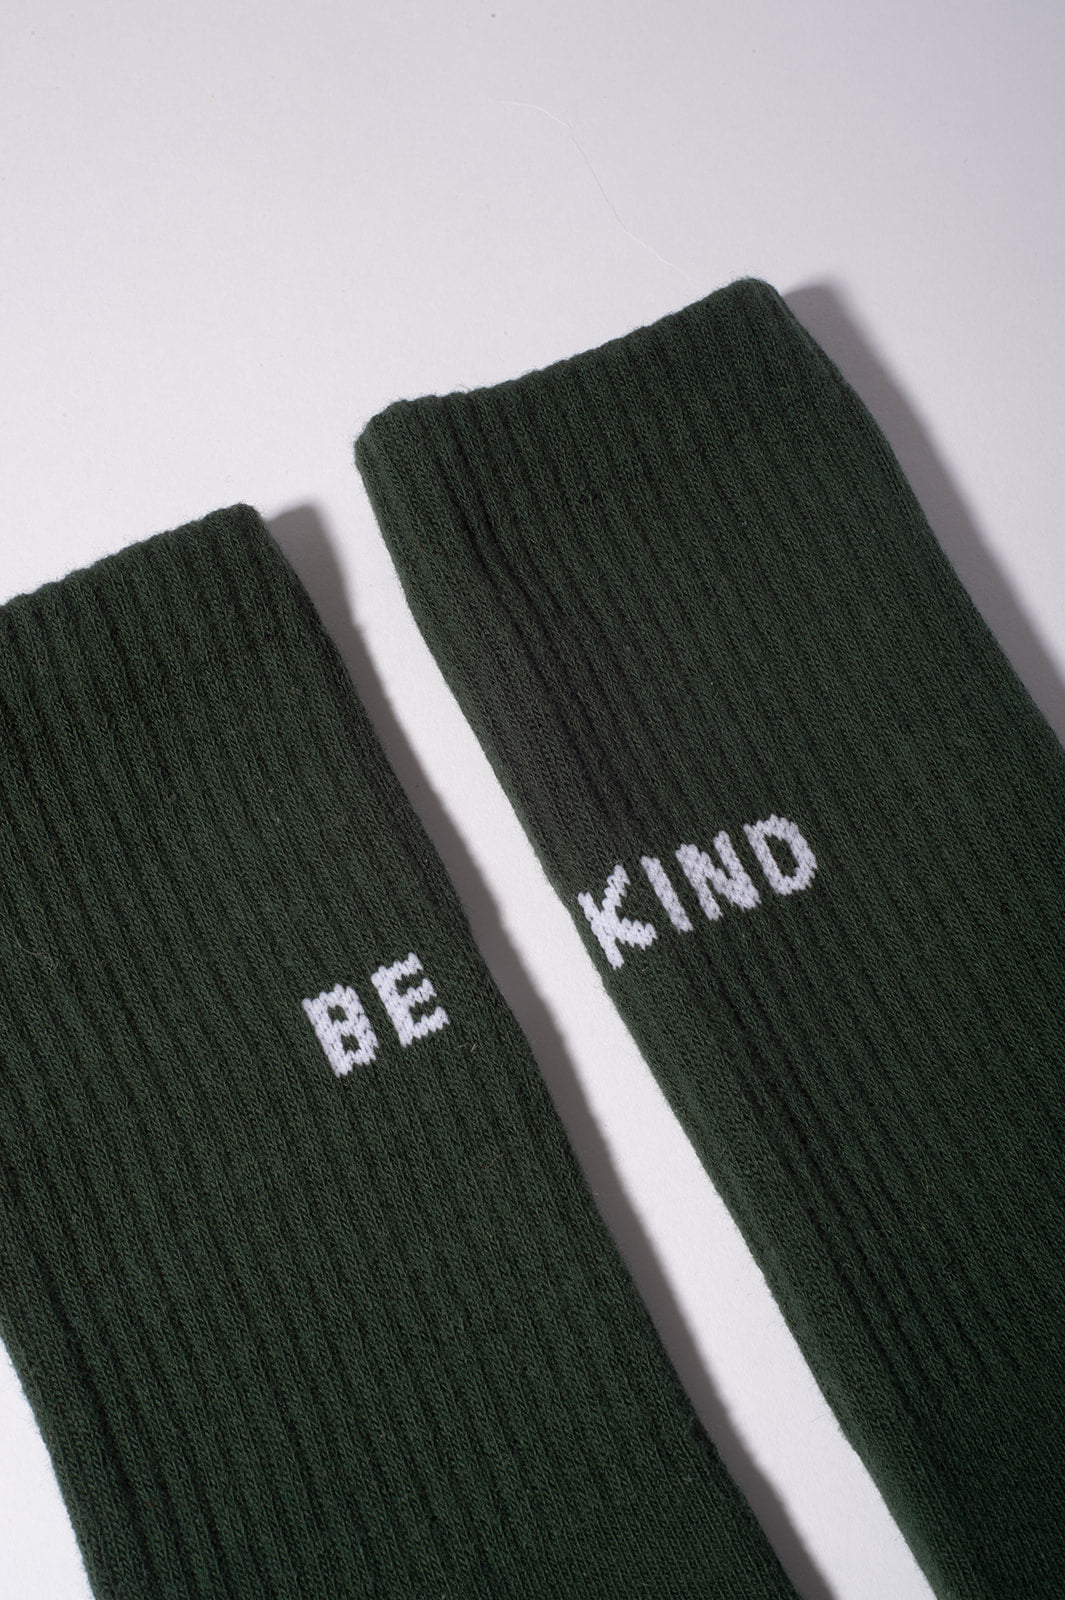 Men's Be Kind Crew Socks Green